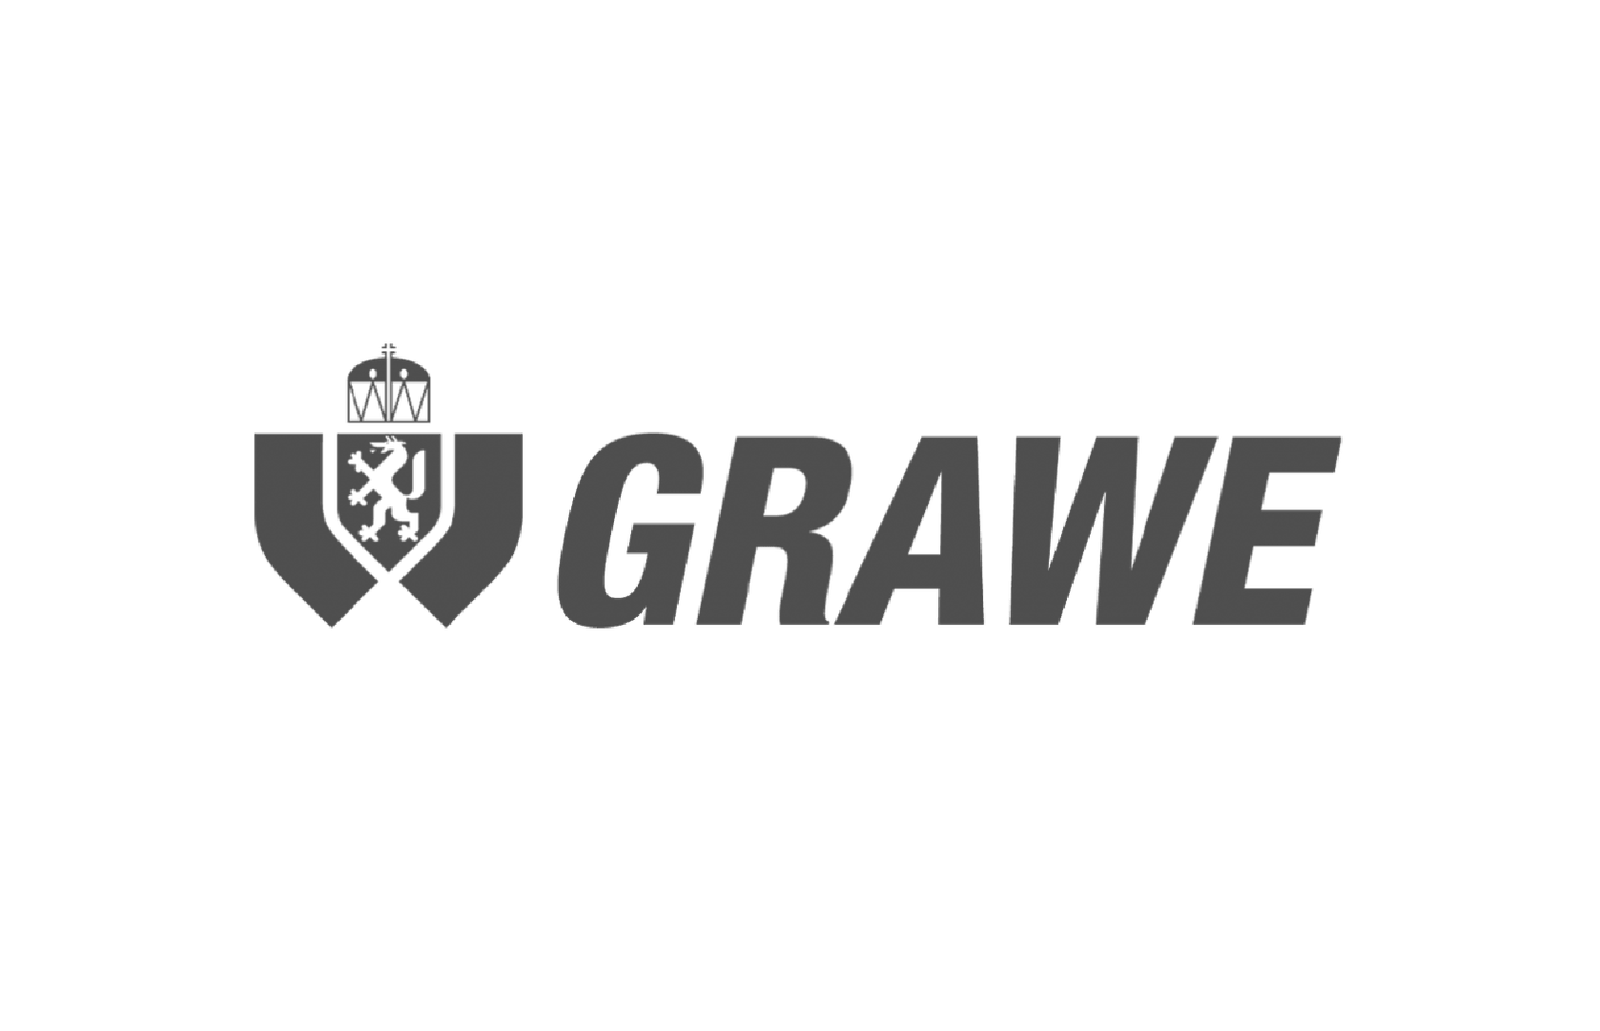 Grawe - Grazer Wechselseitige, Logo